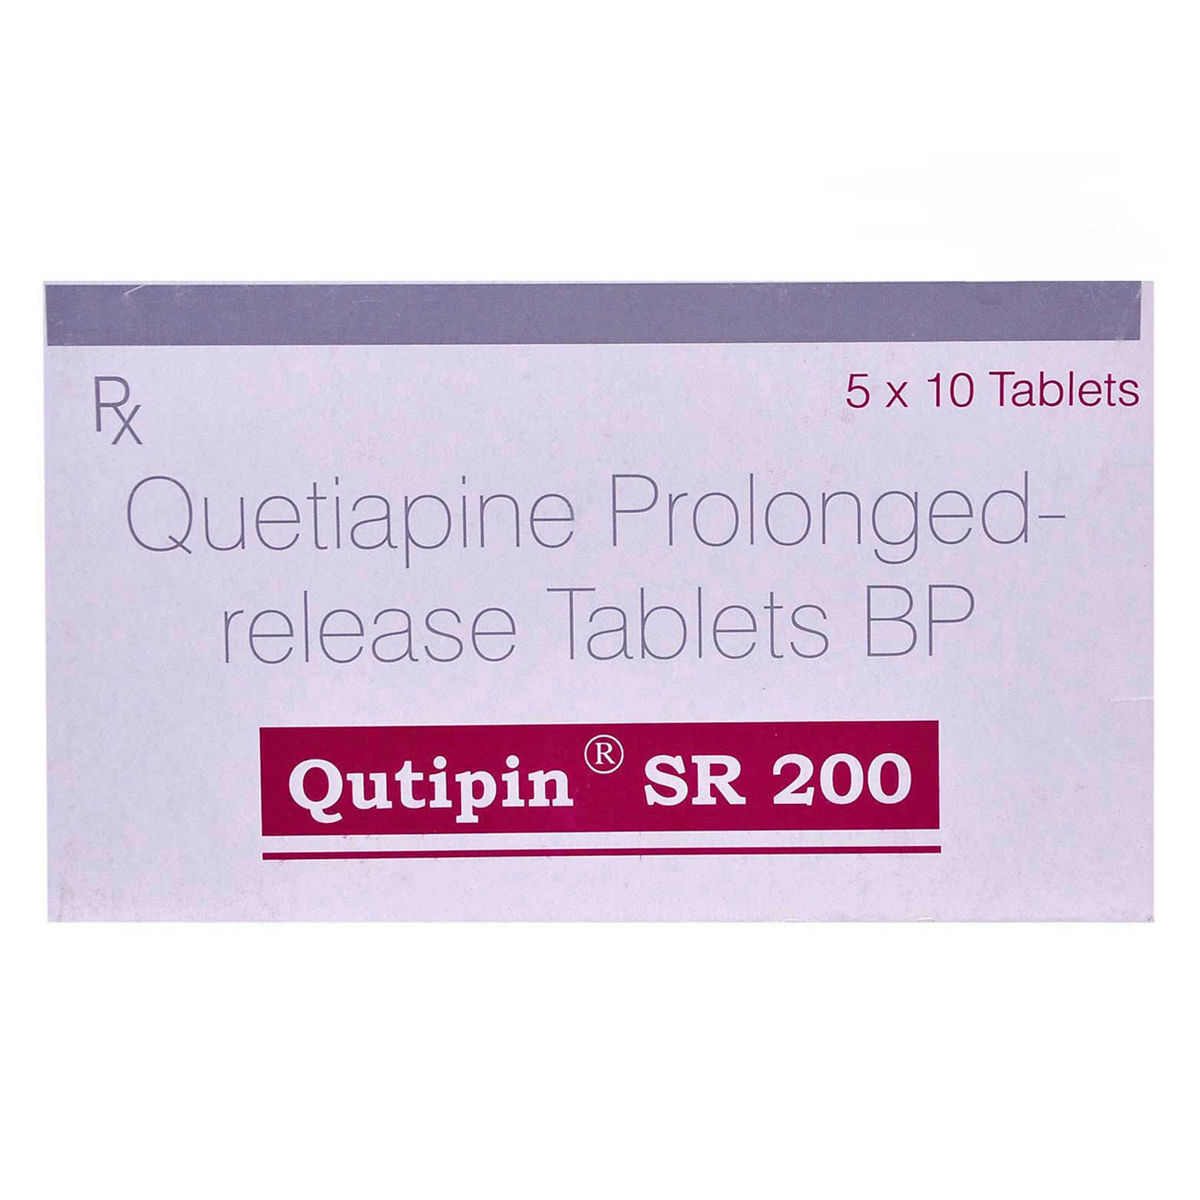 Buy Qutipin SR 200 Tablet 10's Online